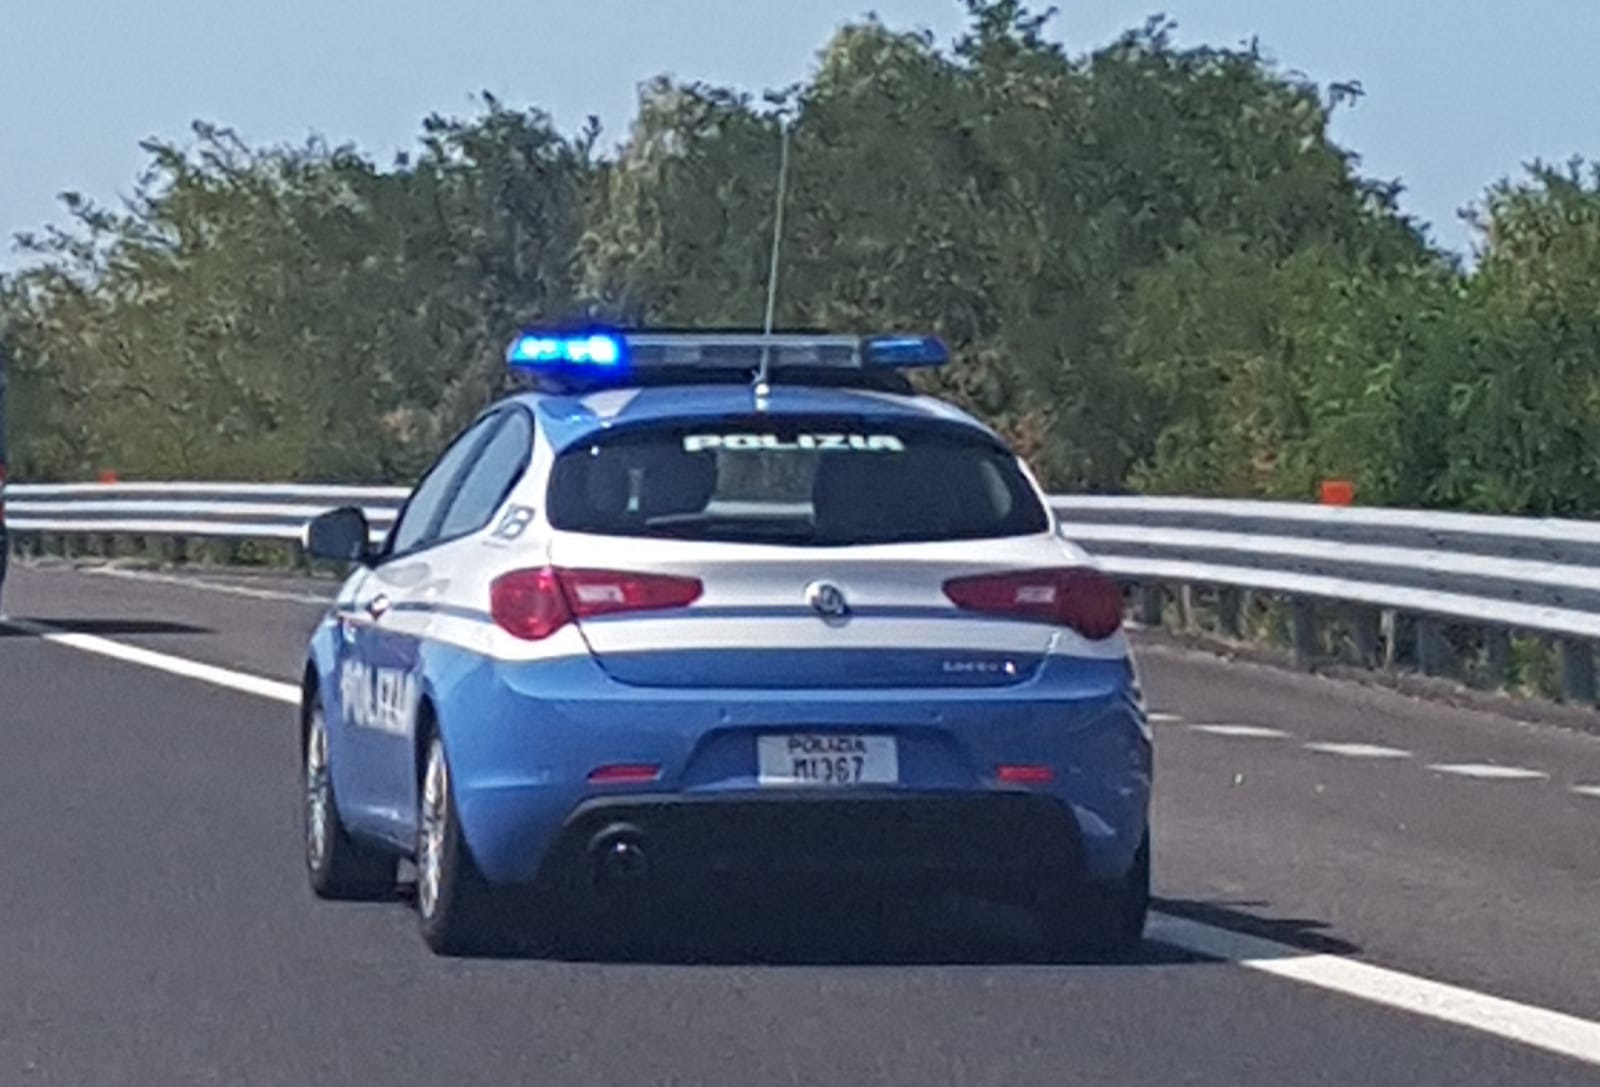 Arresti e perquisizioni per assalto a portavalori nella zona di Modena.